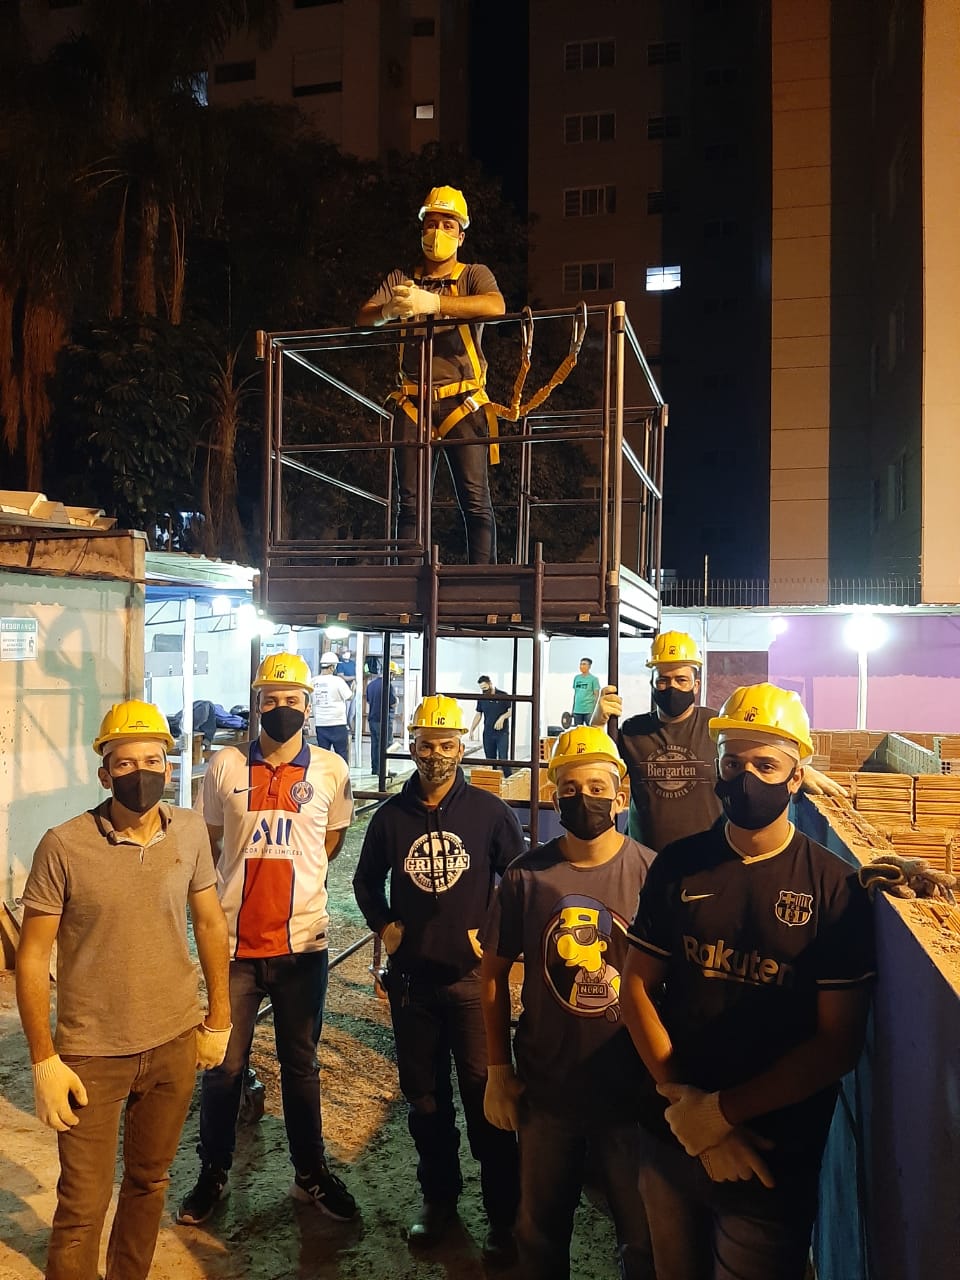 Guarulhos – Curso NR35 – Segurança em Trabalhos em Altura